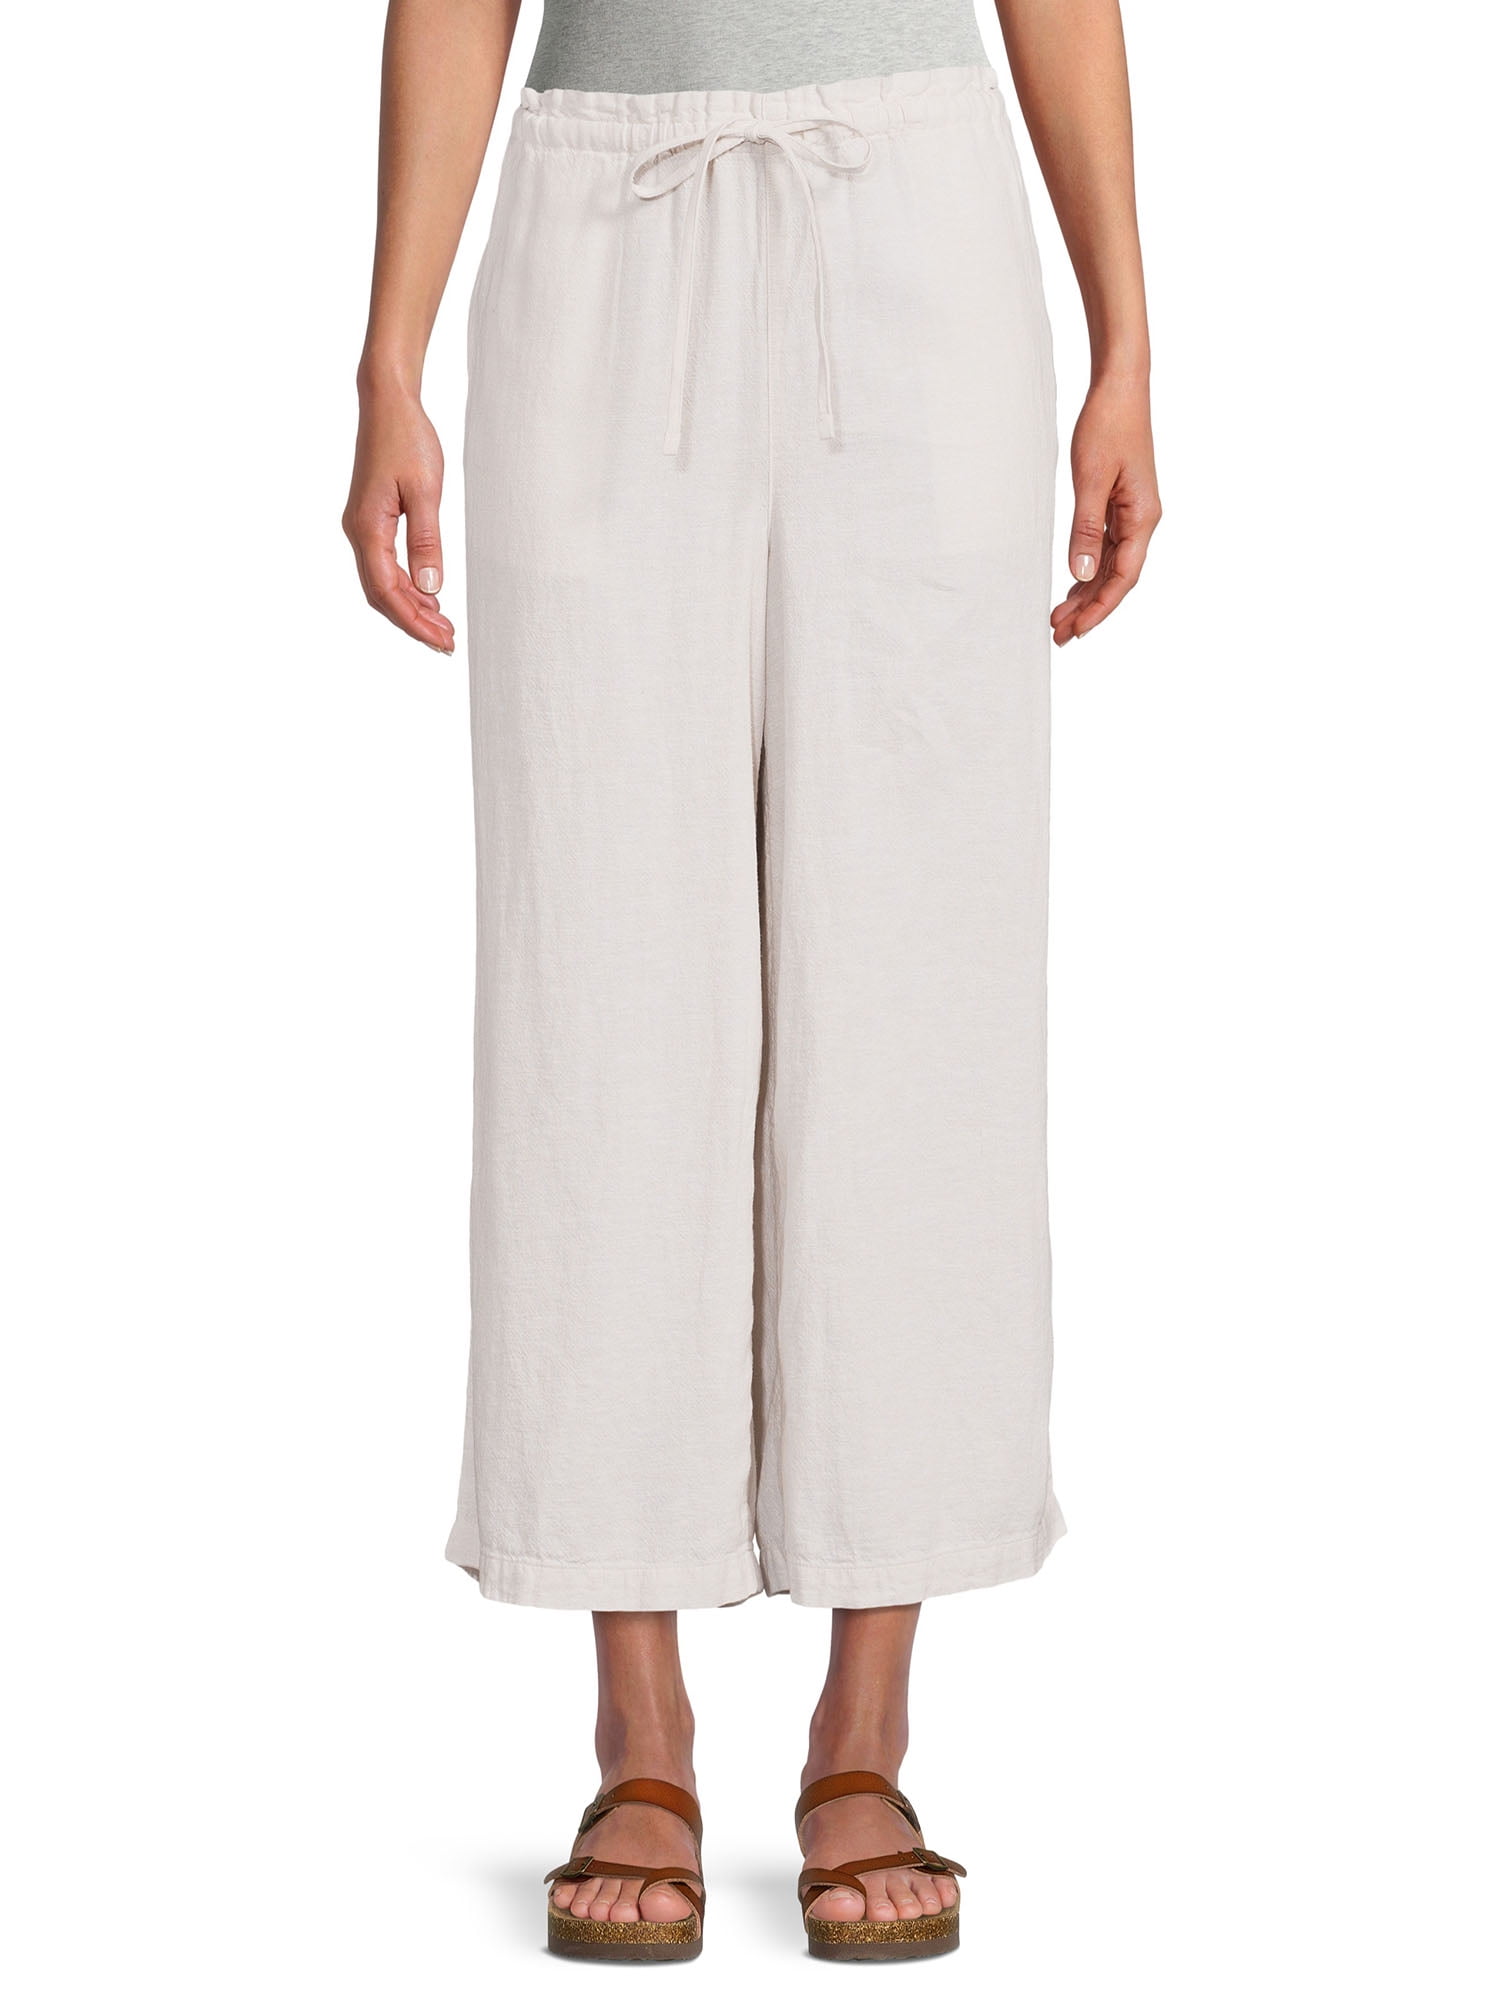 Women's Drawstring Linen Summer Casual Shorts Holiday Pants High Waist Trouser 